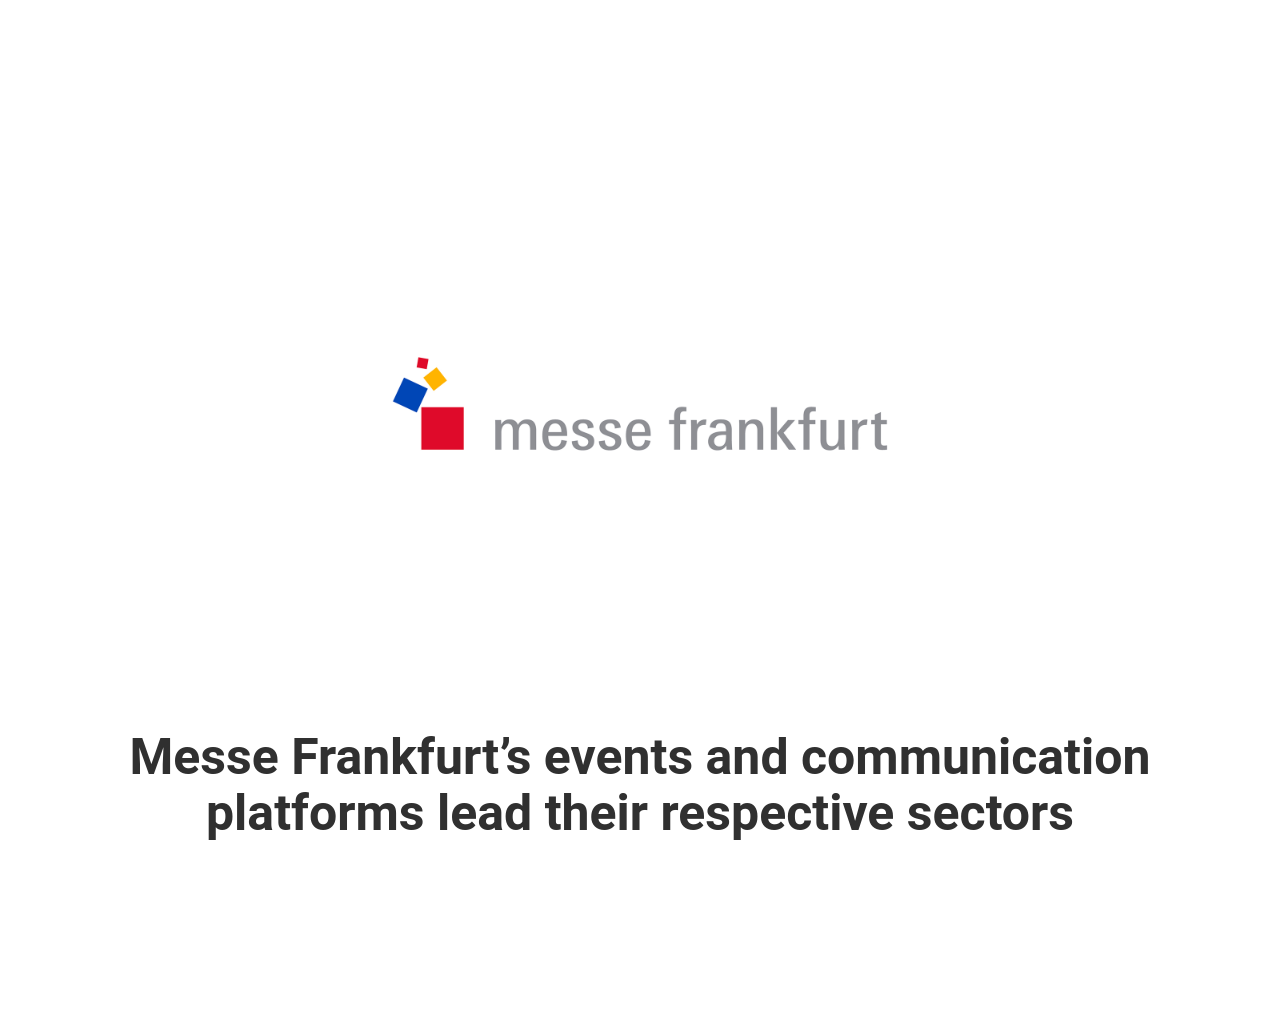 messefrankfurt.com